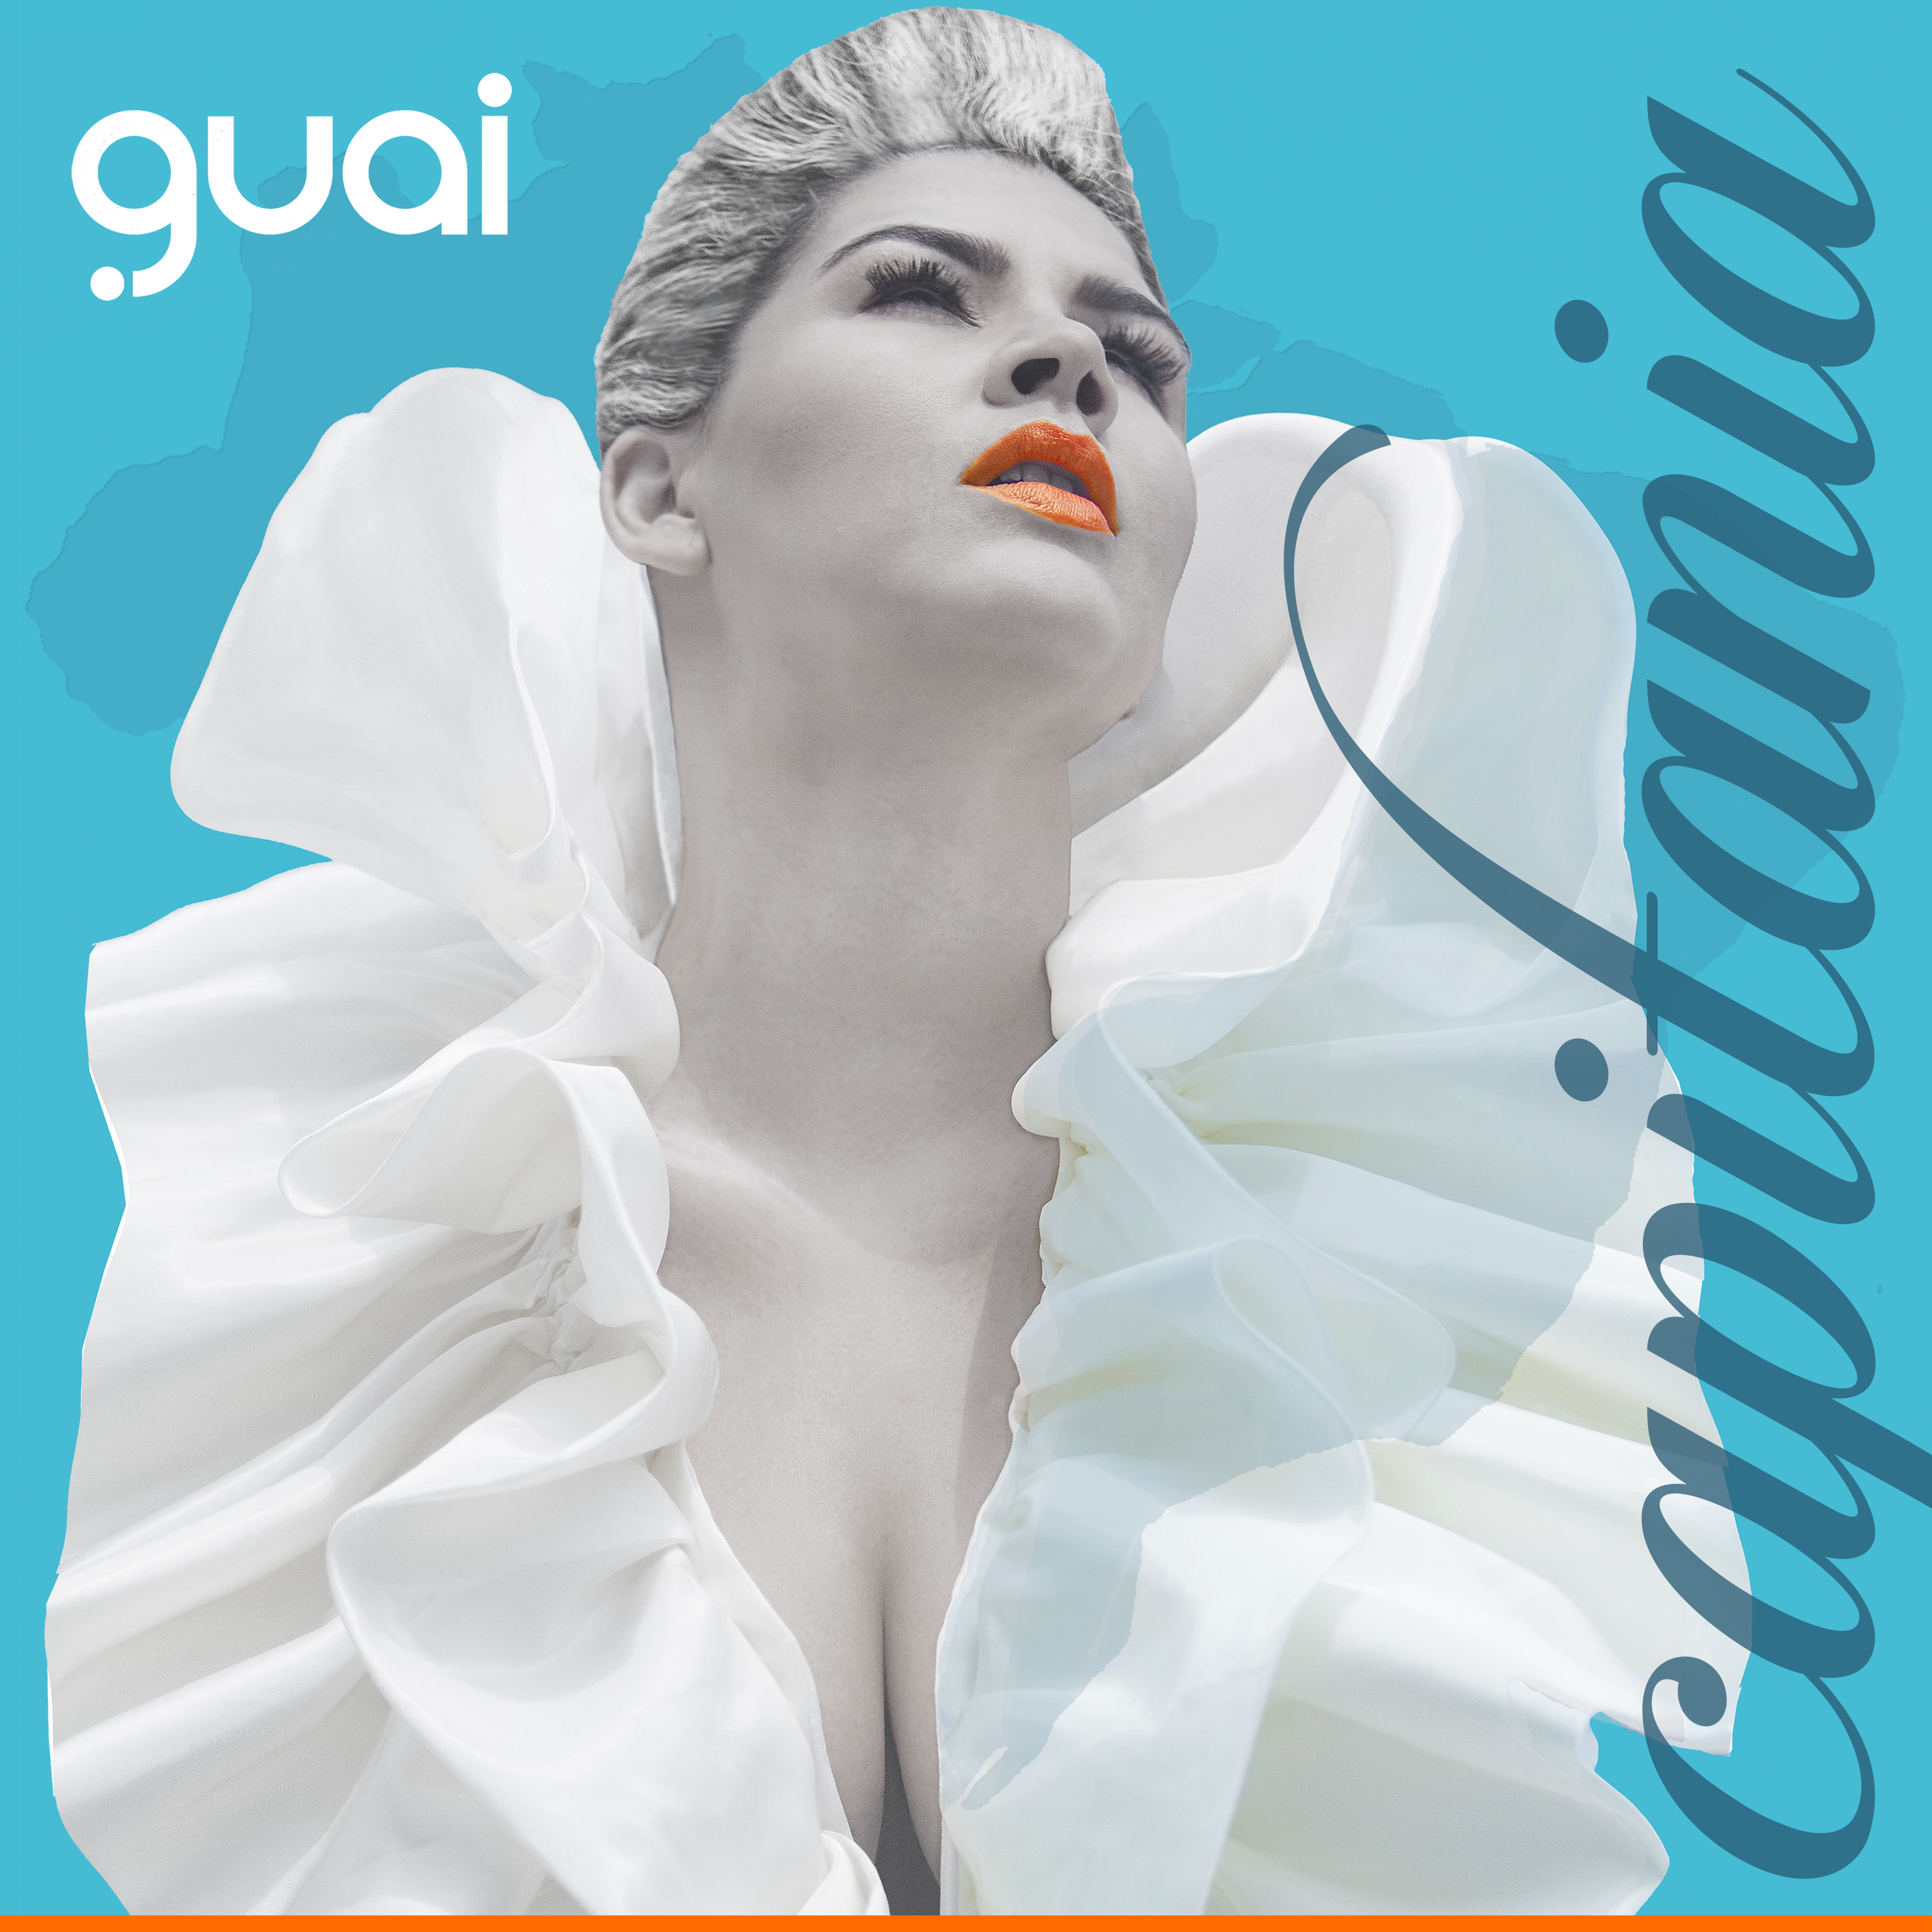 Novo disco da GUAI tem Ivan Lins e outros artistas consagrados